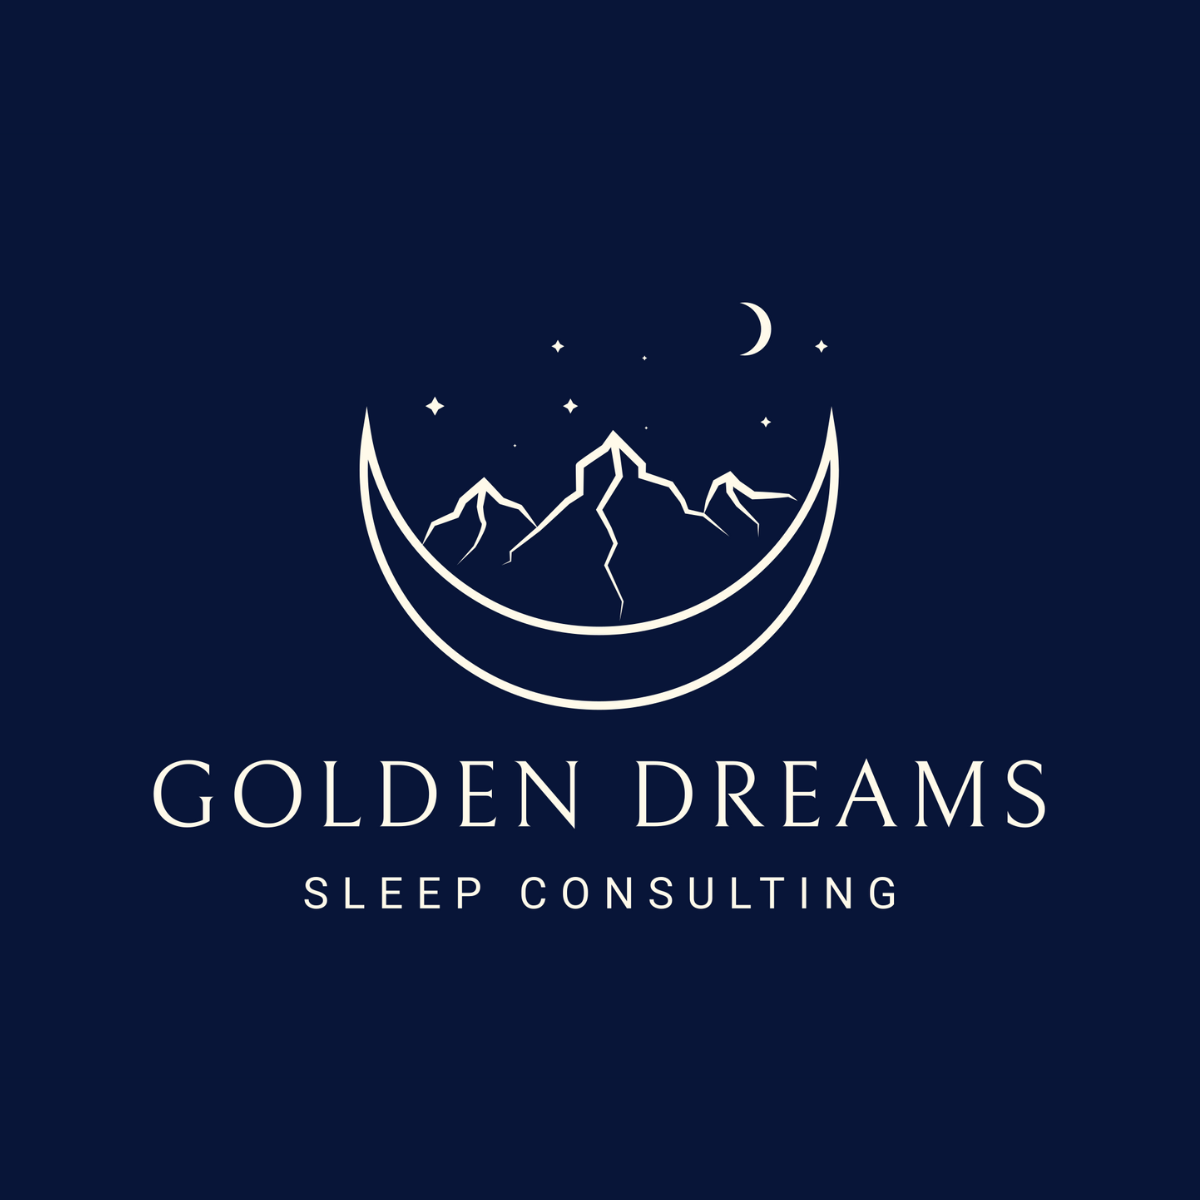 GOLDEN DREAMS SLEEP CONSULTING